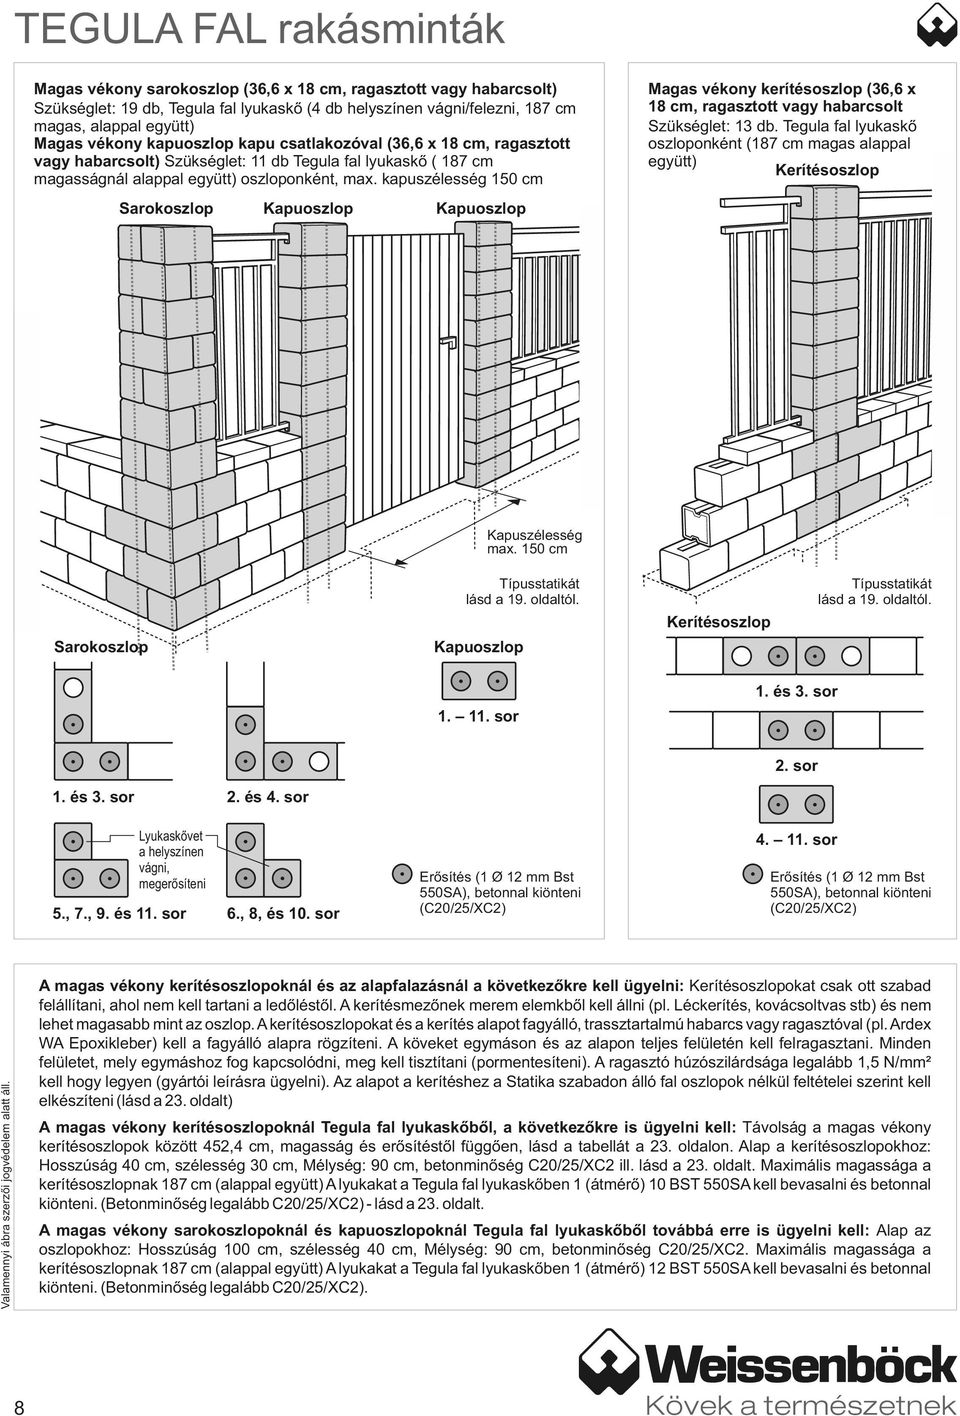 kapuszélesség 10 Magas vékony kerítésoszlop (3, x, ragasztott vagy habarcsolt Szükséglet: 13 Tegula fal lyukaskő oszloponként ( magas alappal együtt) Kerítésoszlop Sarokoszlop Kapuoszlop Kapuoszlop